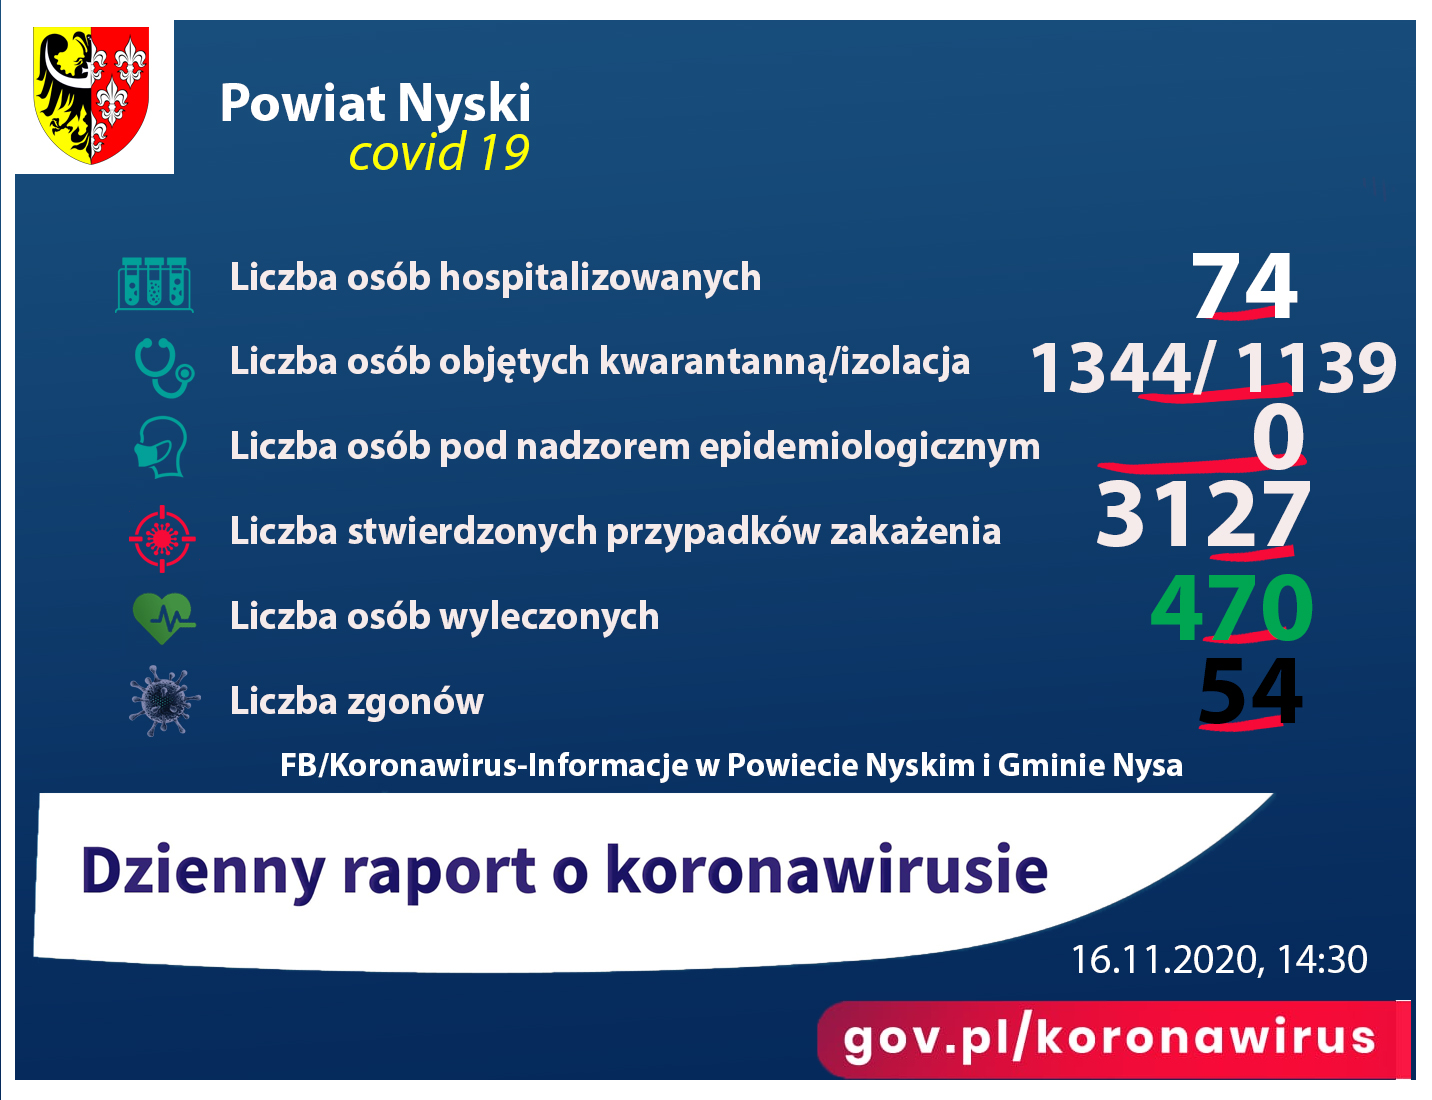 Liczba osób zakażonych 3127, hospitalizowanych - 74, ozdrowieńców - 470, zgonów 54